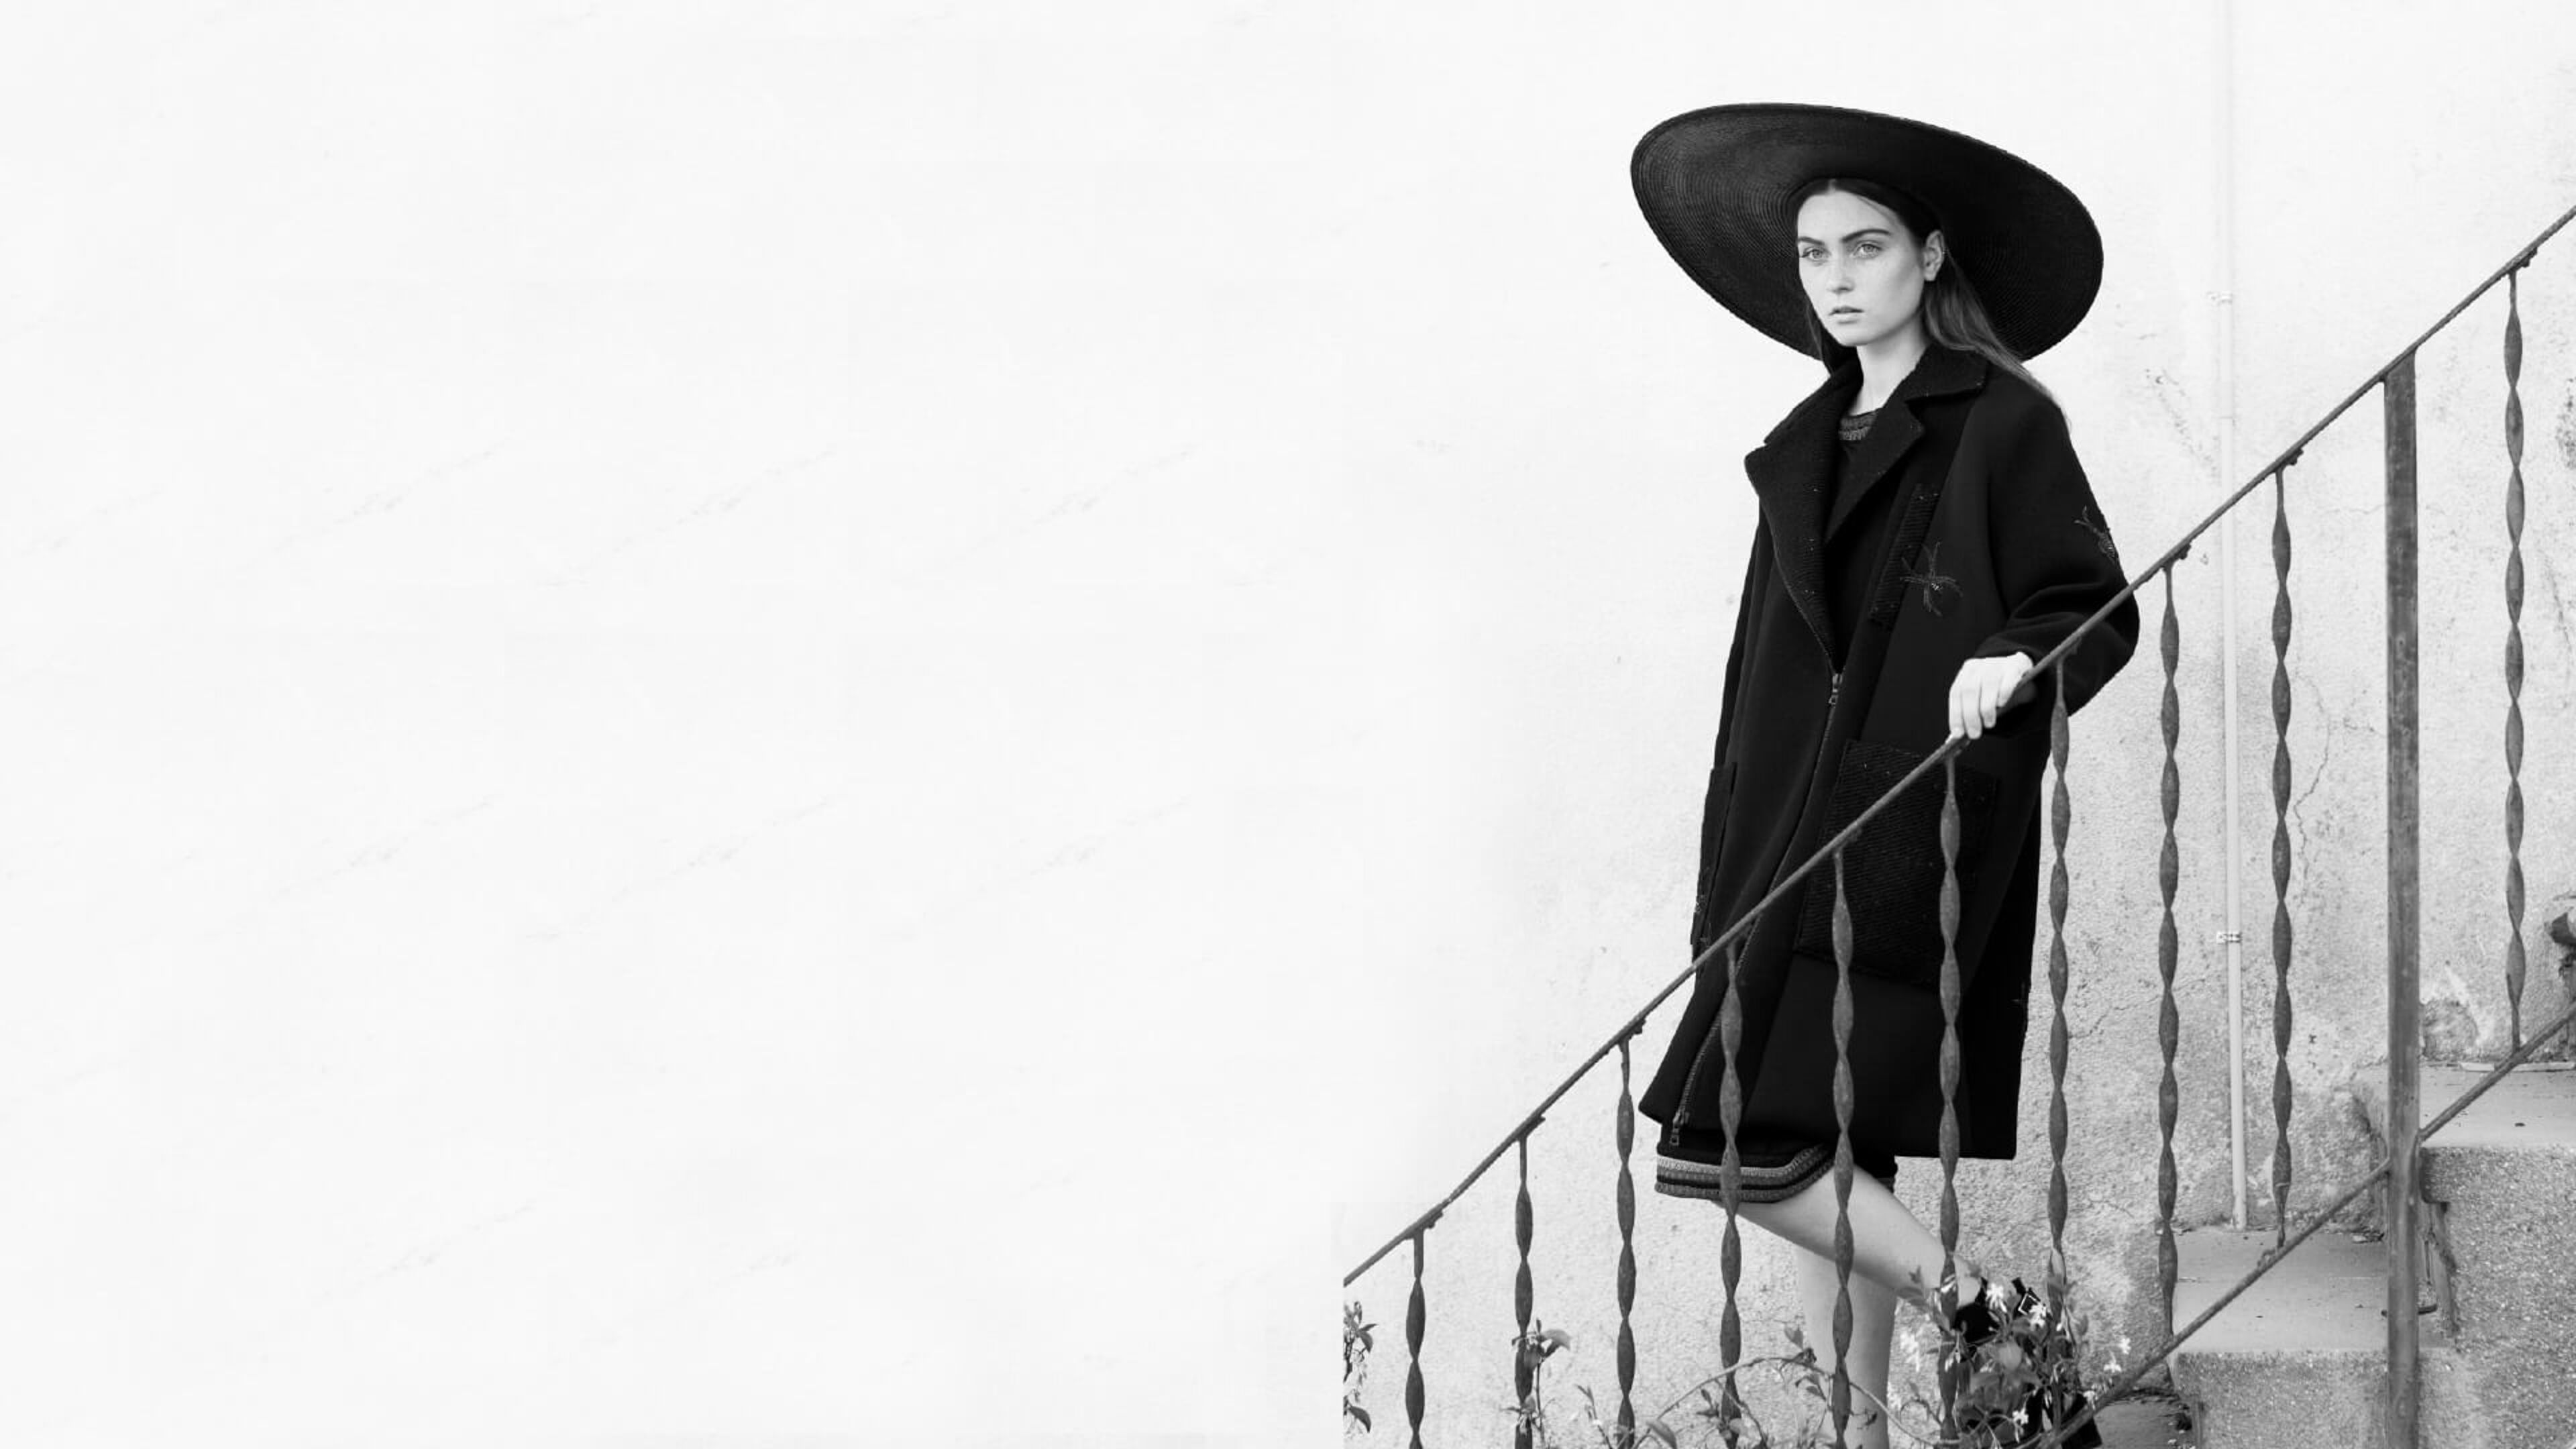 Un model amb abric negre i barret de volta ampla posa en una escala exterior, evocant un estil monocromàtic atemporal.